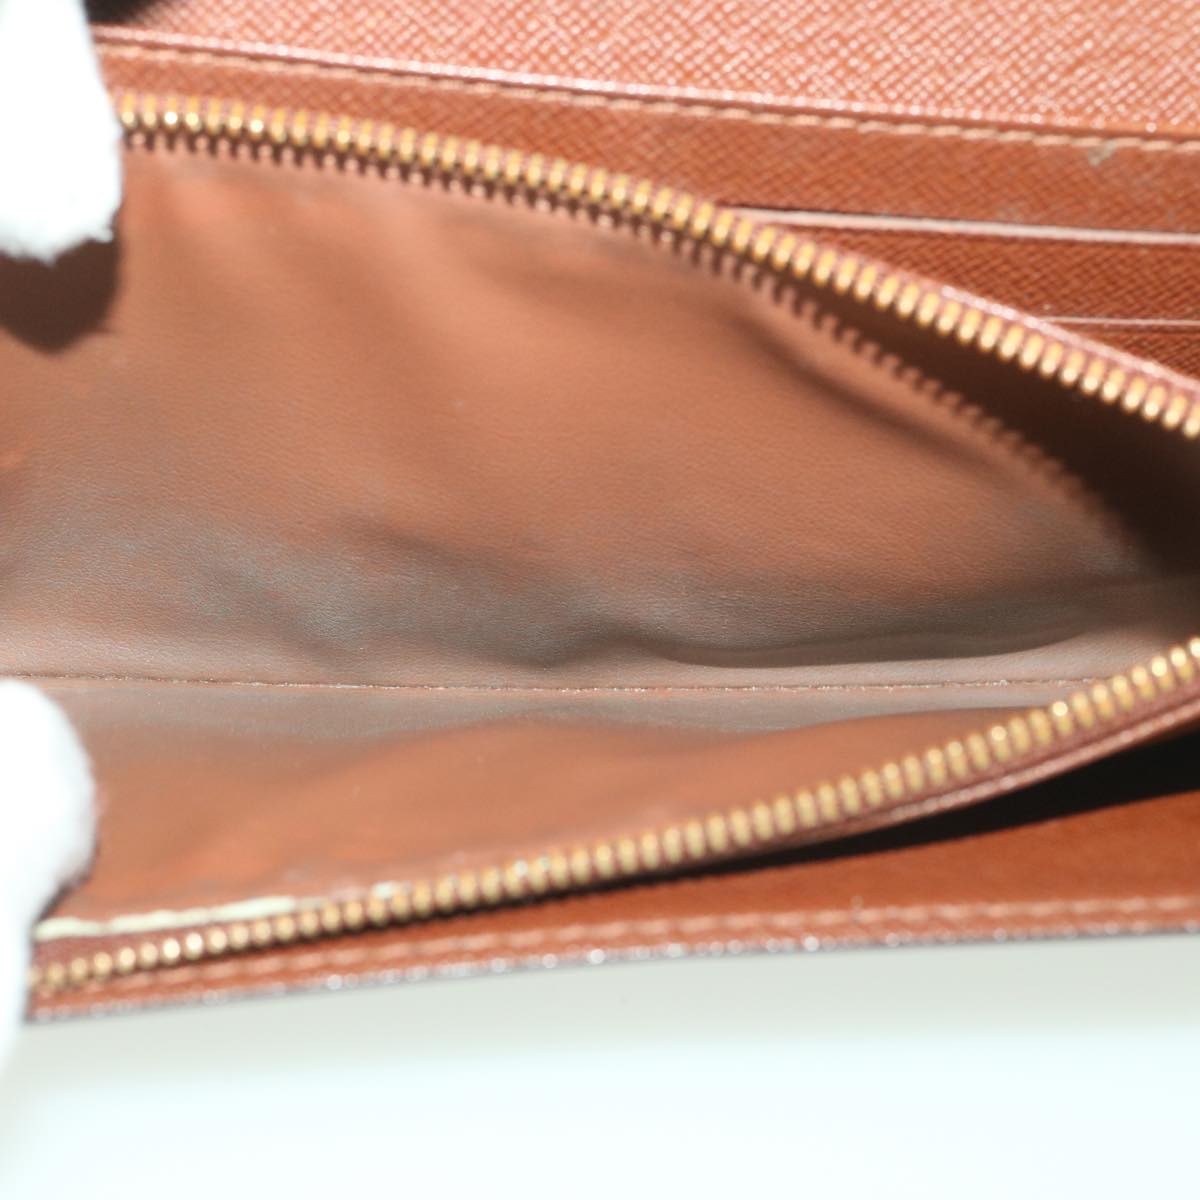 Louis Vuitton, Bags, Authentic Louis Vuitton Courcelles Body Bag